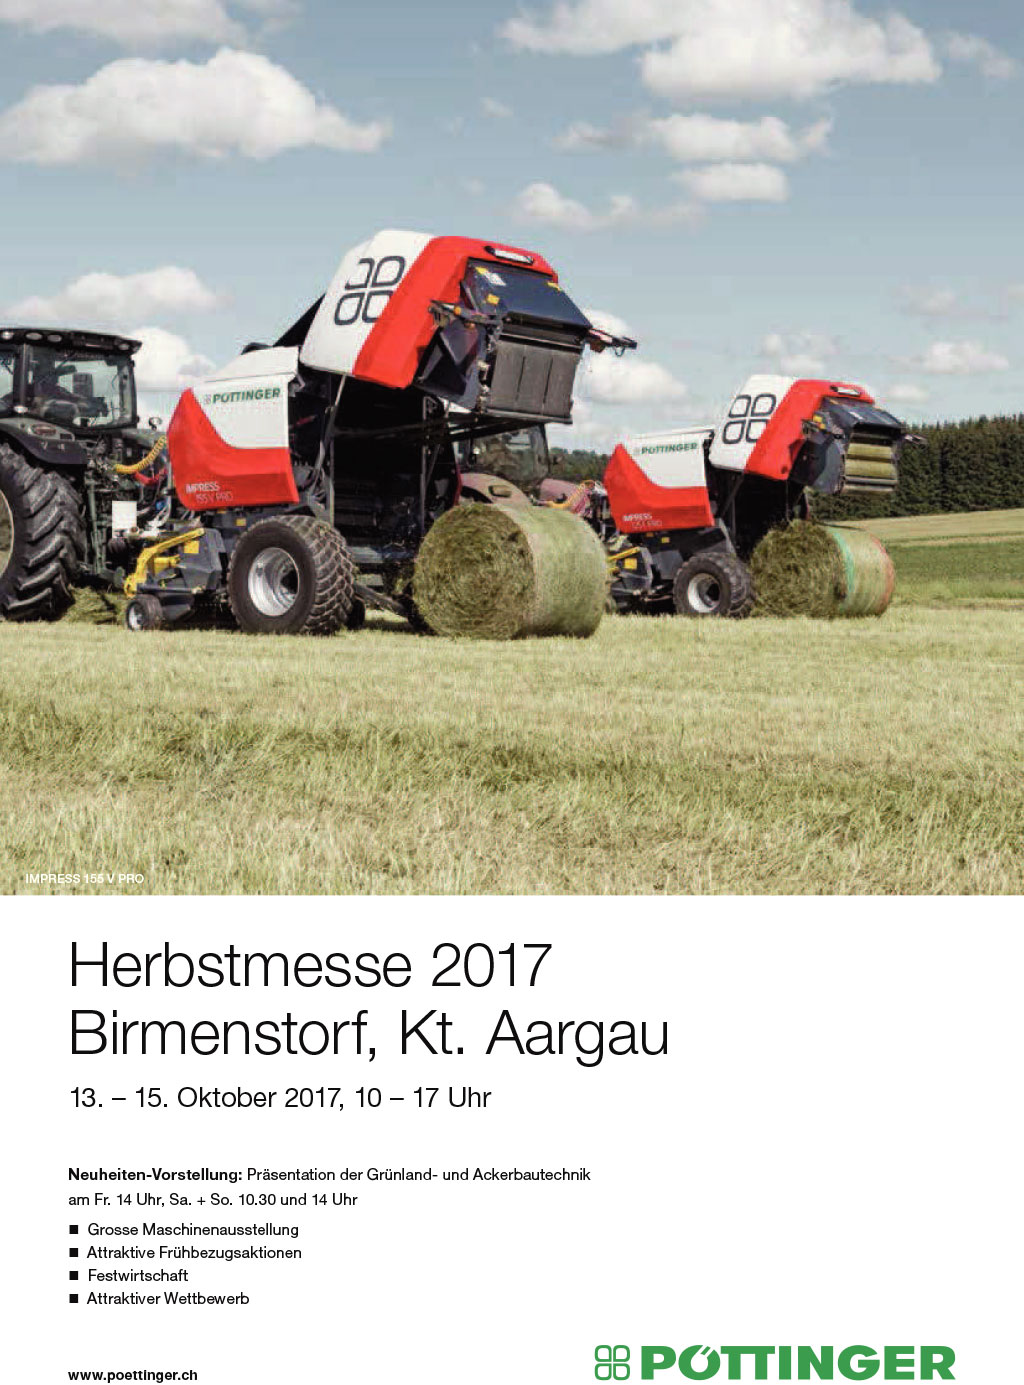 Pöttinger Herbstmesse Birmensdorf Kt. Aargau 13. - 15. Oktober 2017, 10 - 17 Uhr"alt="Pöttinger Herbstmesse Birmensdorf Kt. Aargau 13. - 15. Oktober 2017, 10 - 17 Uhr